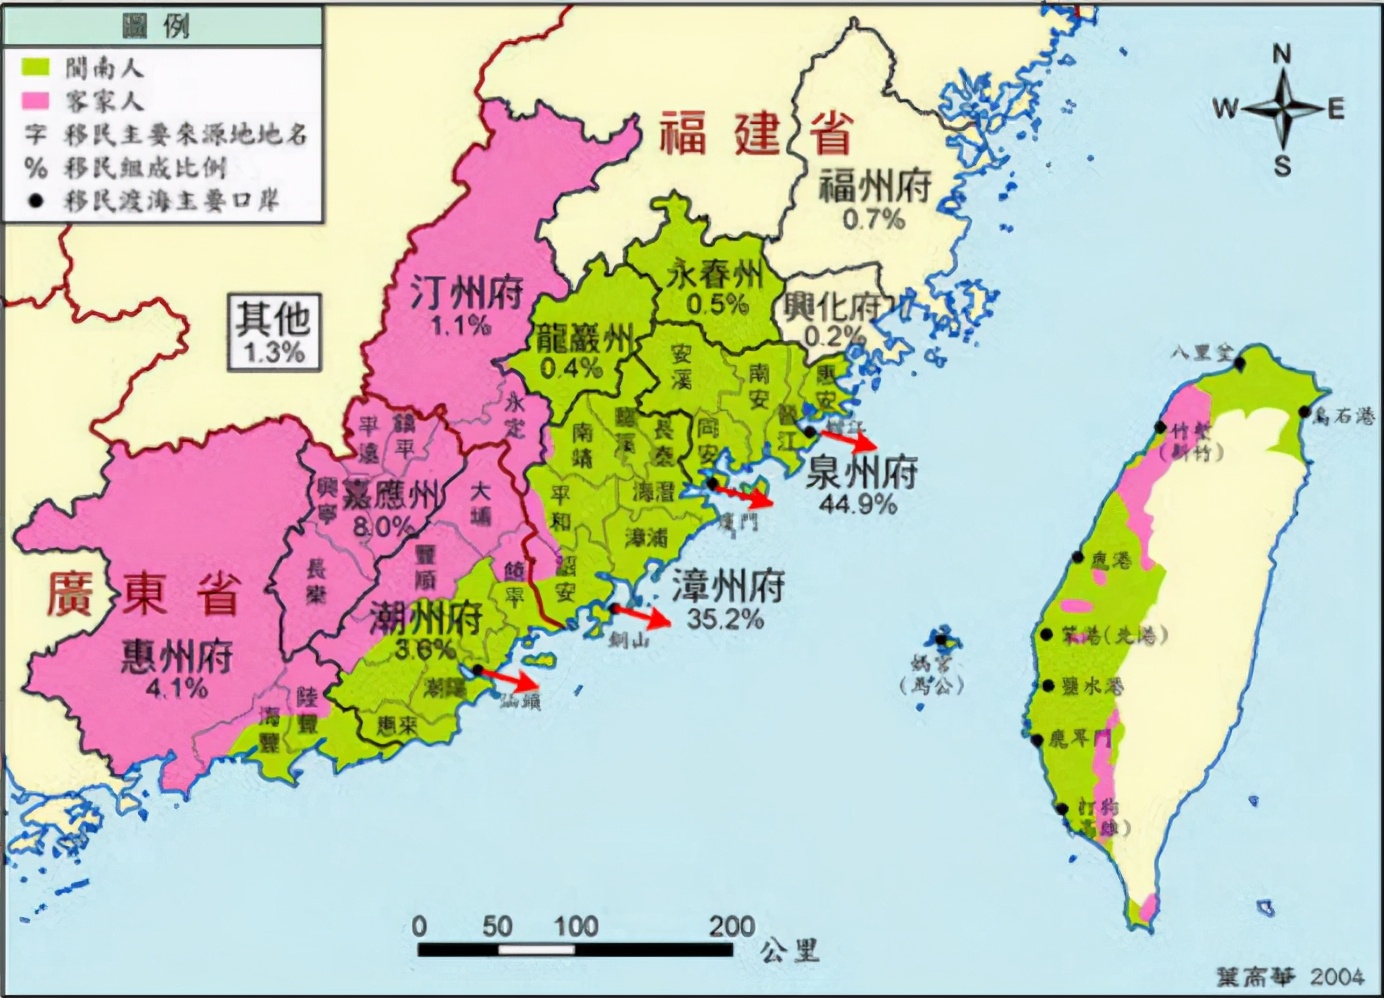 從海盜據點到中國東南門戶，經數百年發展，台灣地位出現巨大轉變